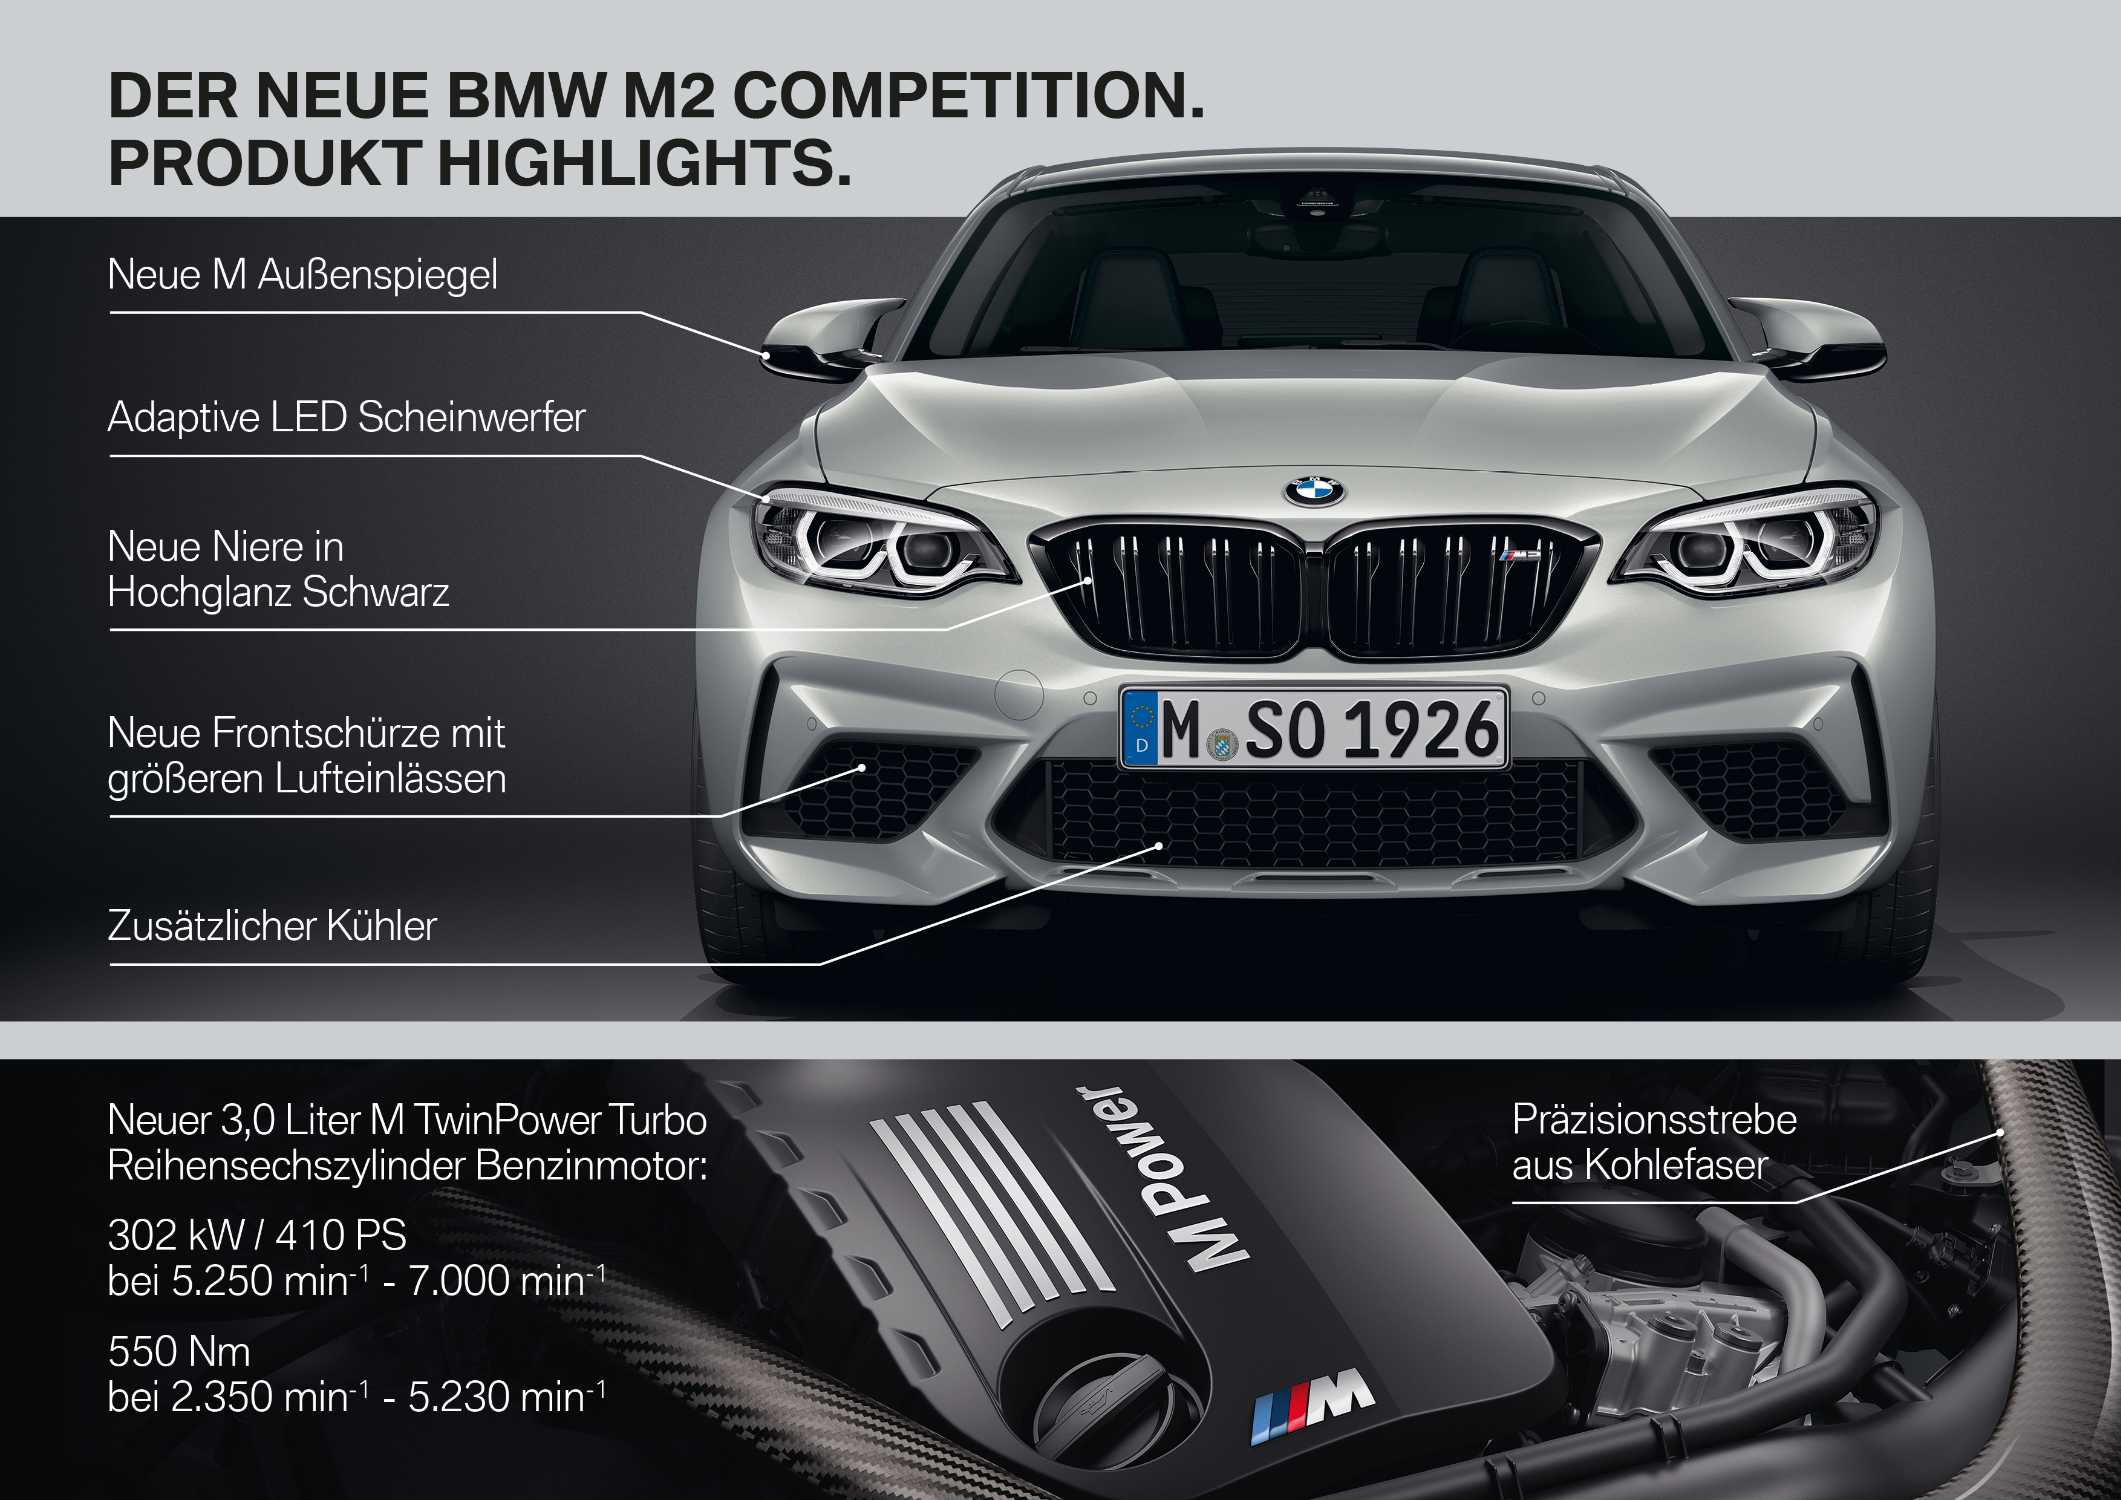 Der neue BMW M2 Competition (04/2018).